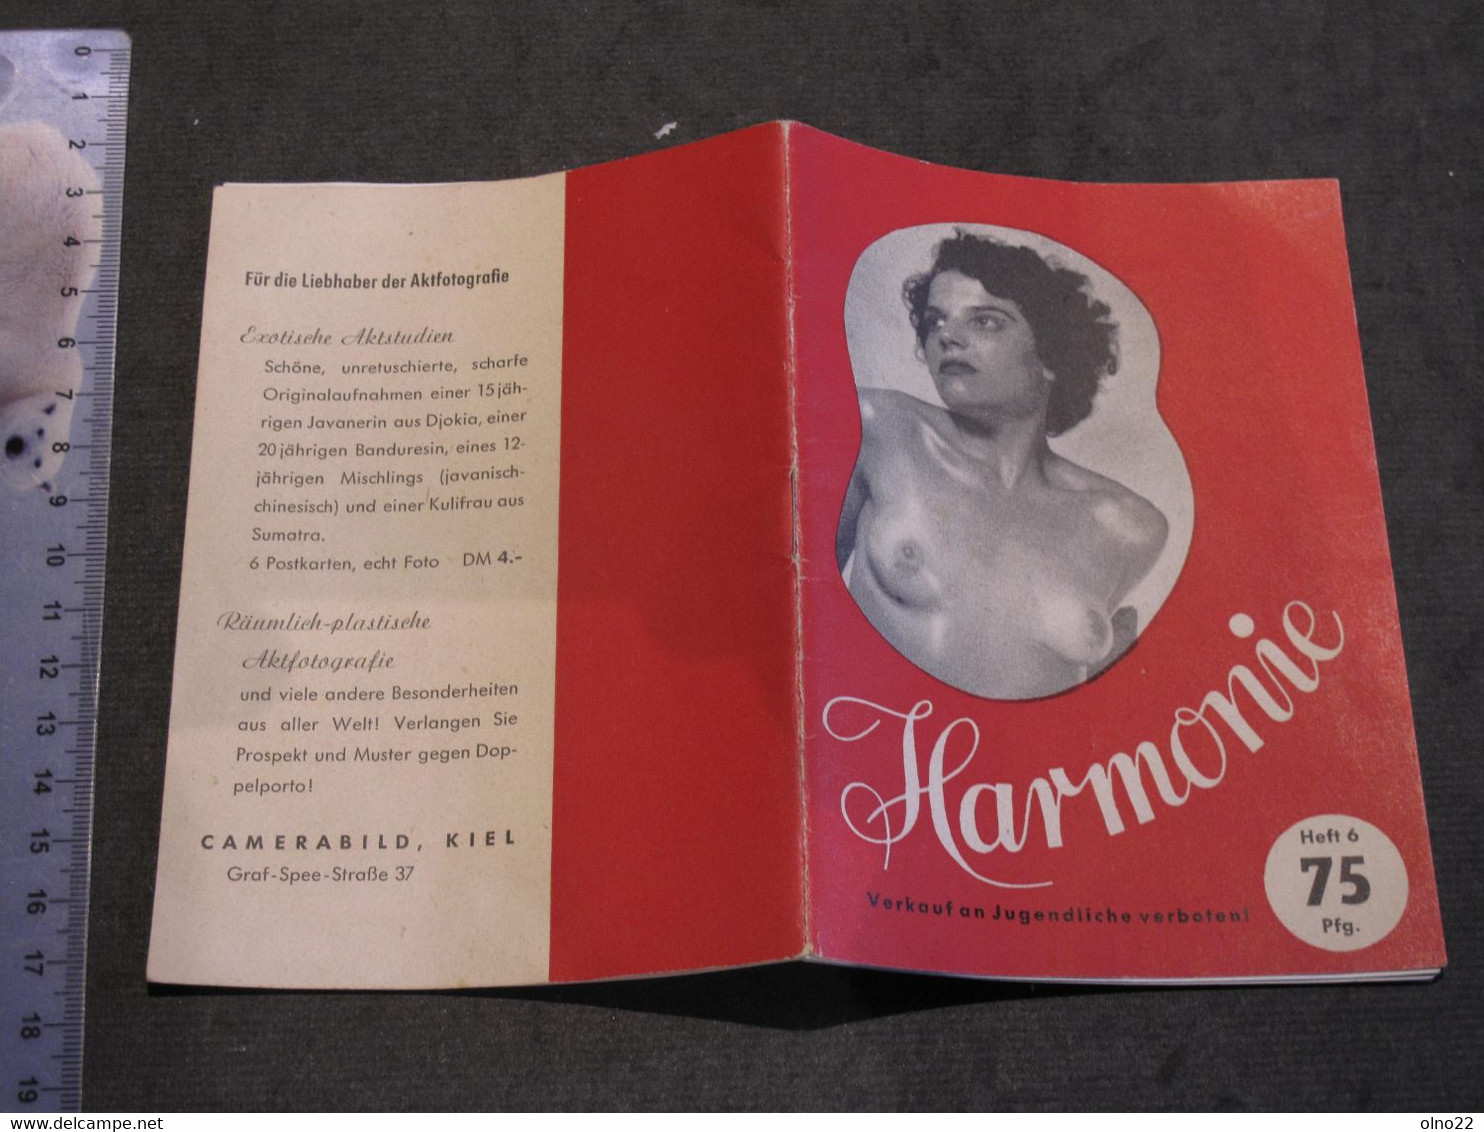 HARMONIE - CAMERA BIELD KIEL - PETIT RECUEIL DE 15 PHOTOS N/B DE NUS FEMININS EDITION ALLEMANDE - CIRCA ANNEES 50 - Photography